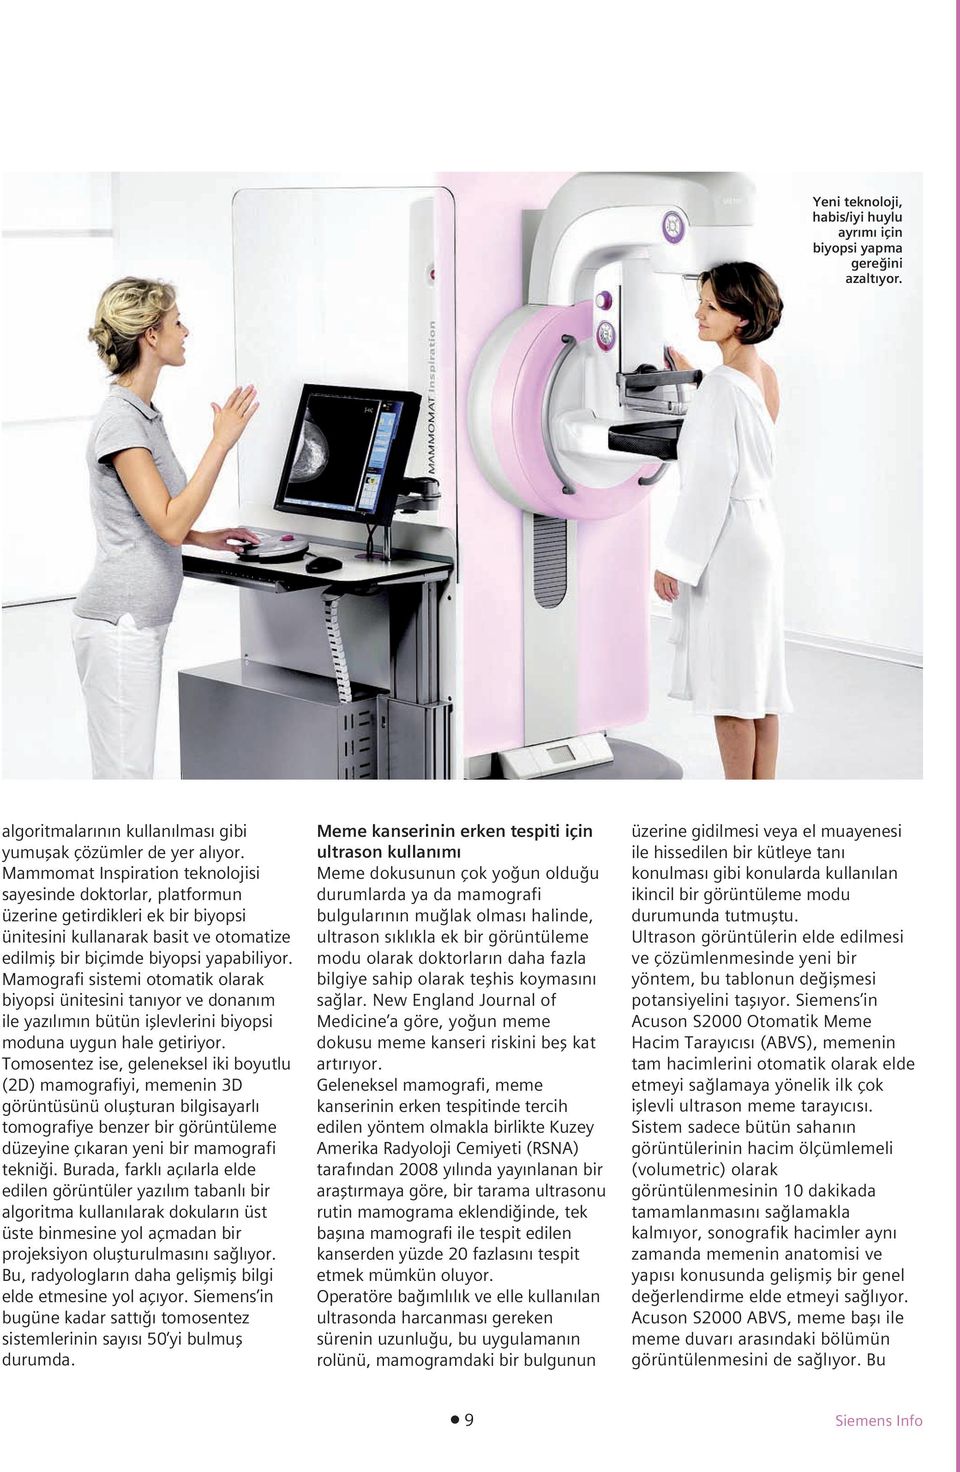 Mamografi sistemi otomatik olarak biyopsi ünitesini tan yor ve donan m ile yaz l m n bütün ifllevlerini biyopsi moduna uygun hale getiriyor.